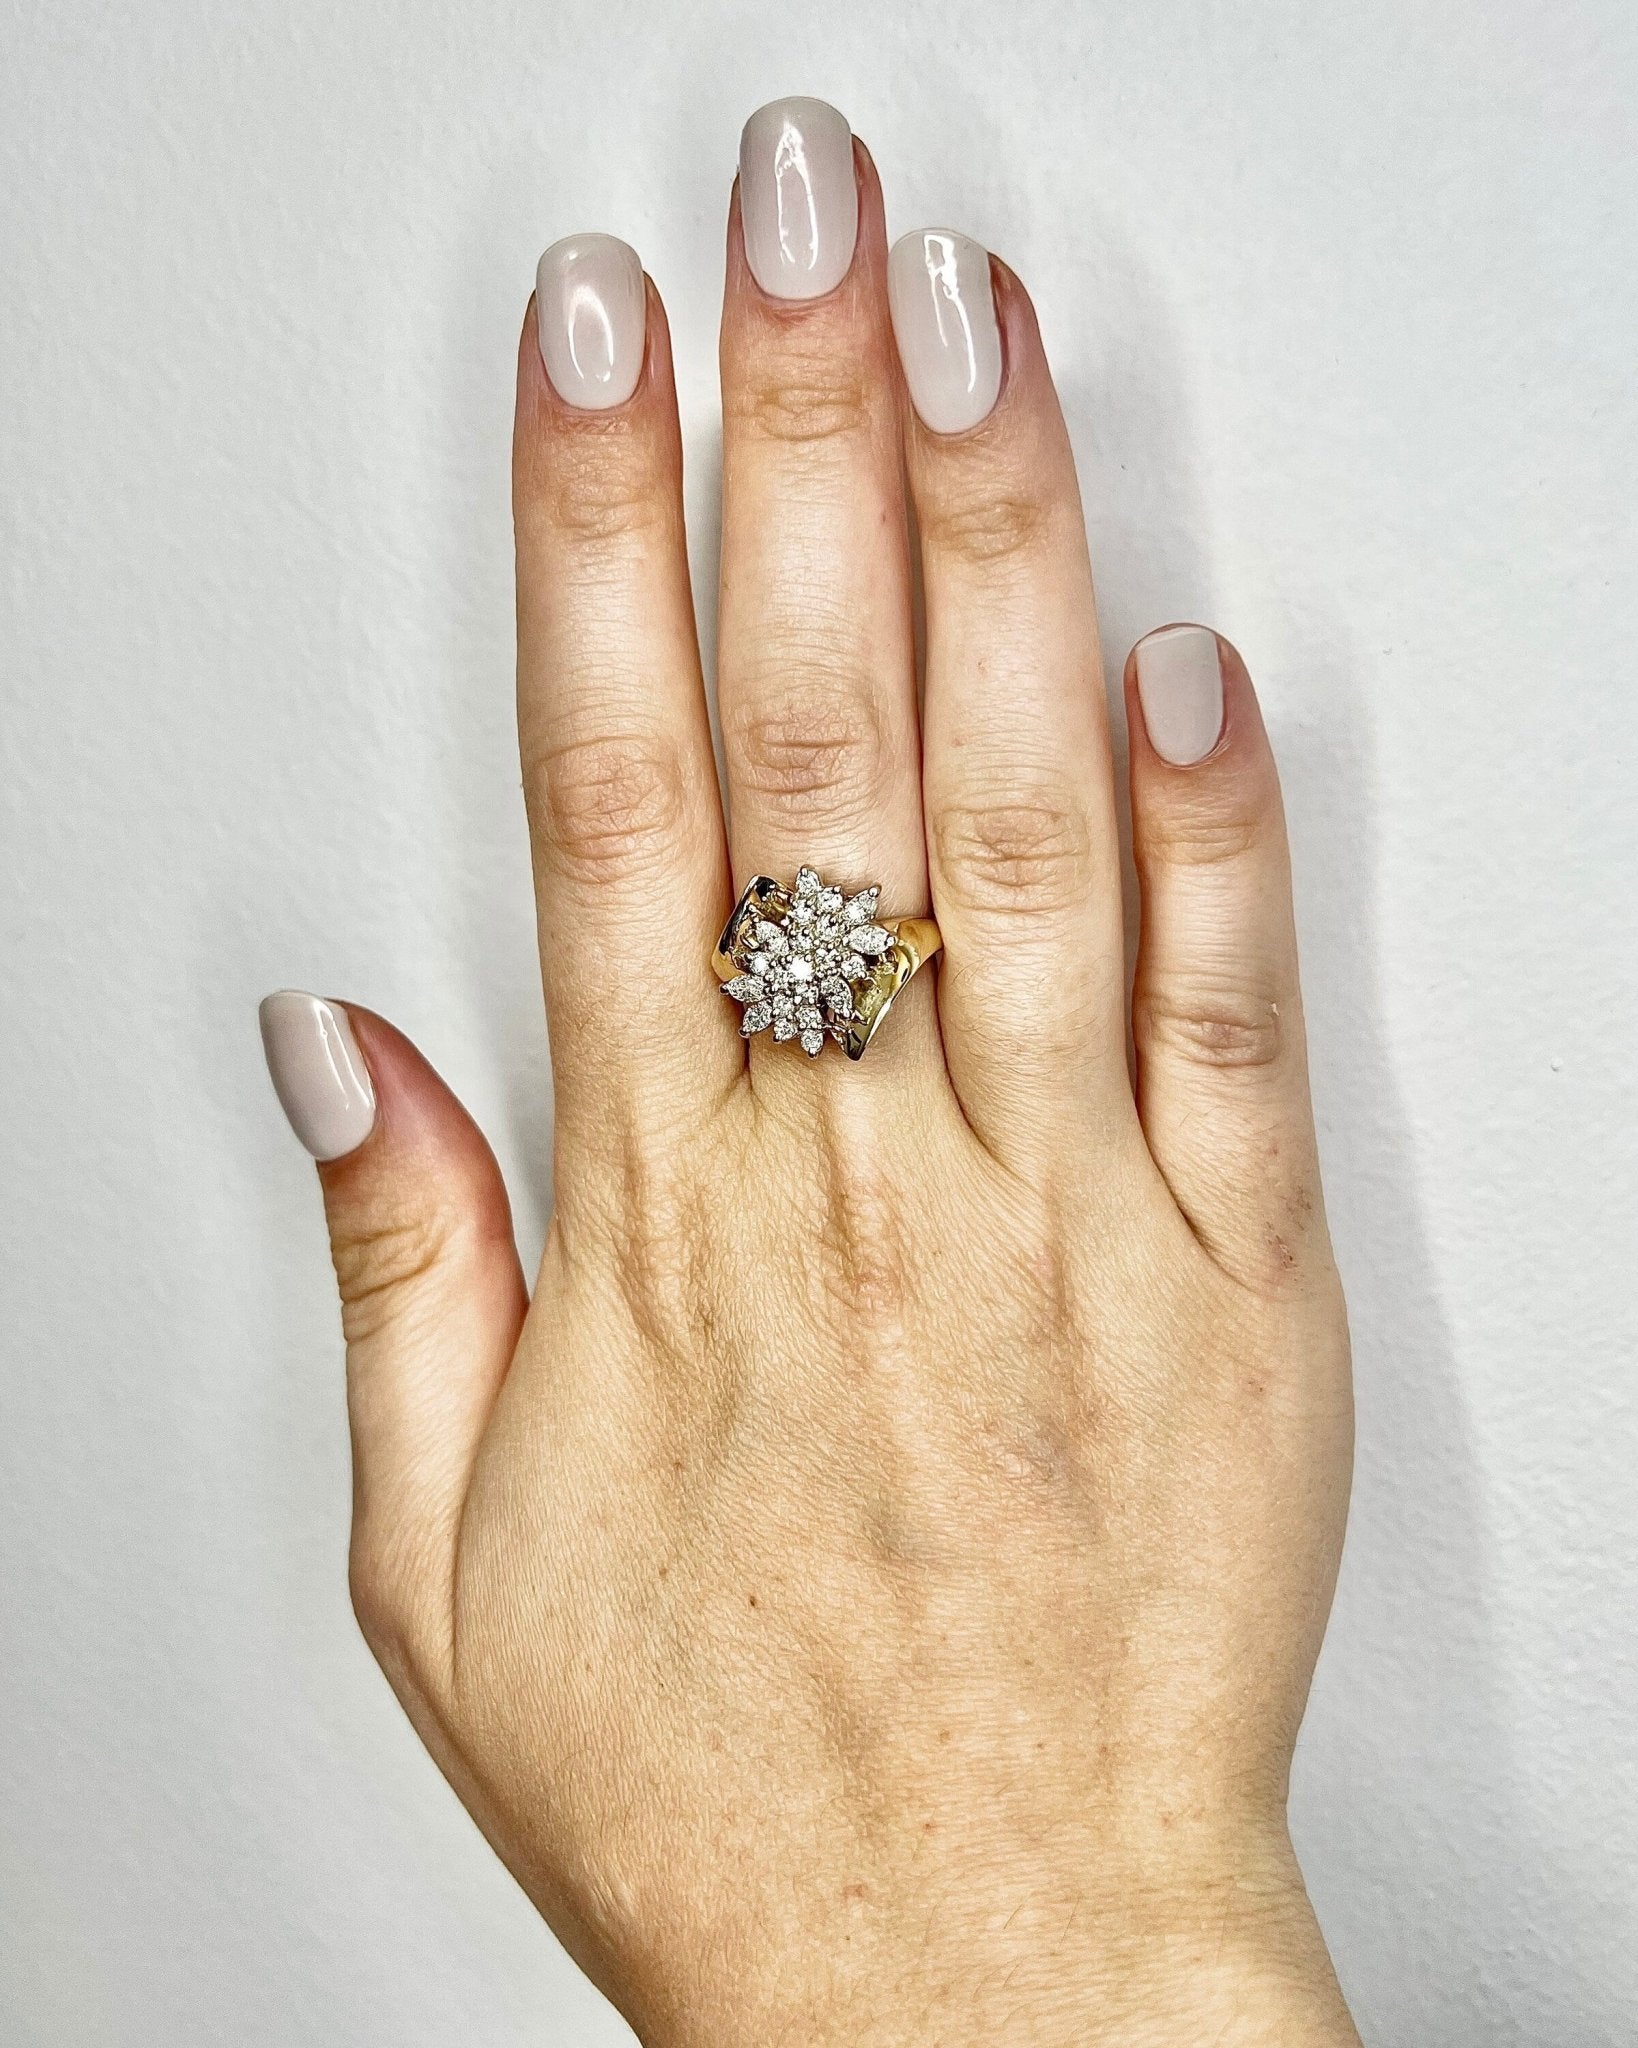 Diamond Ring in 14 Karat Yellow Gold 0.60 Carat Diamond Engagement Ring